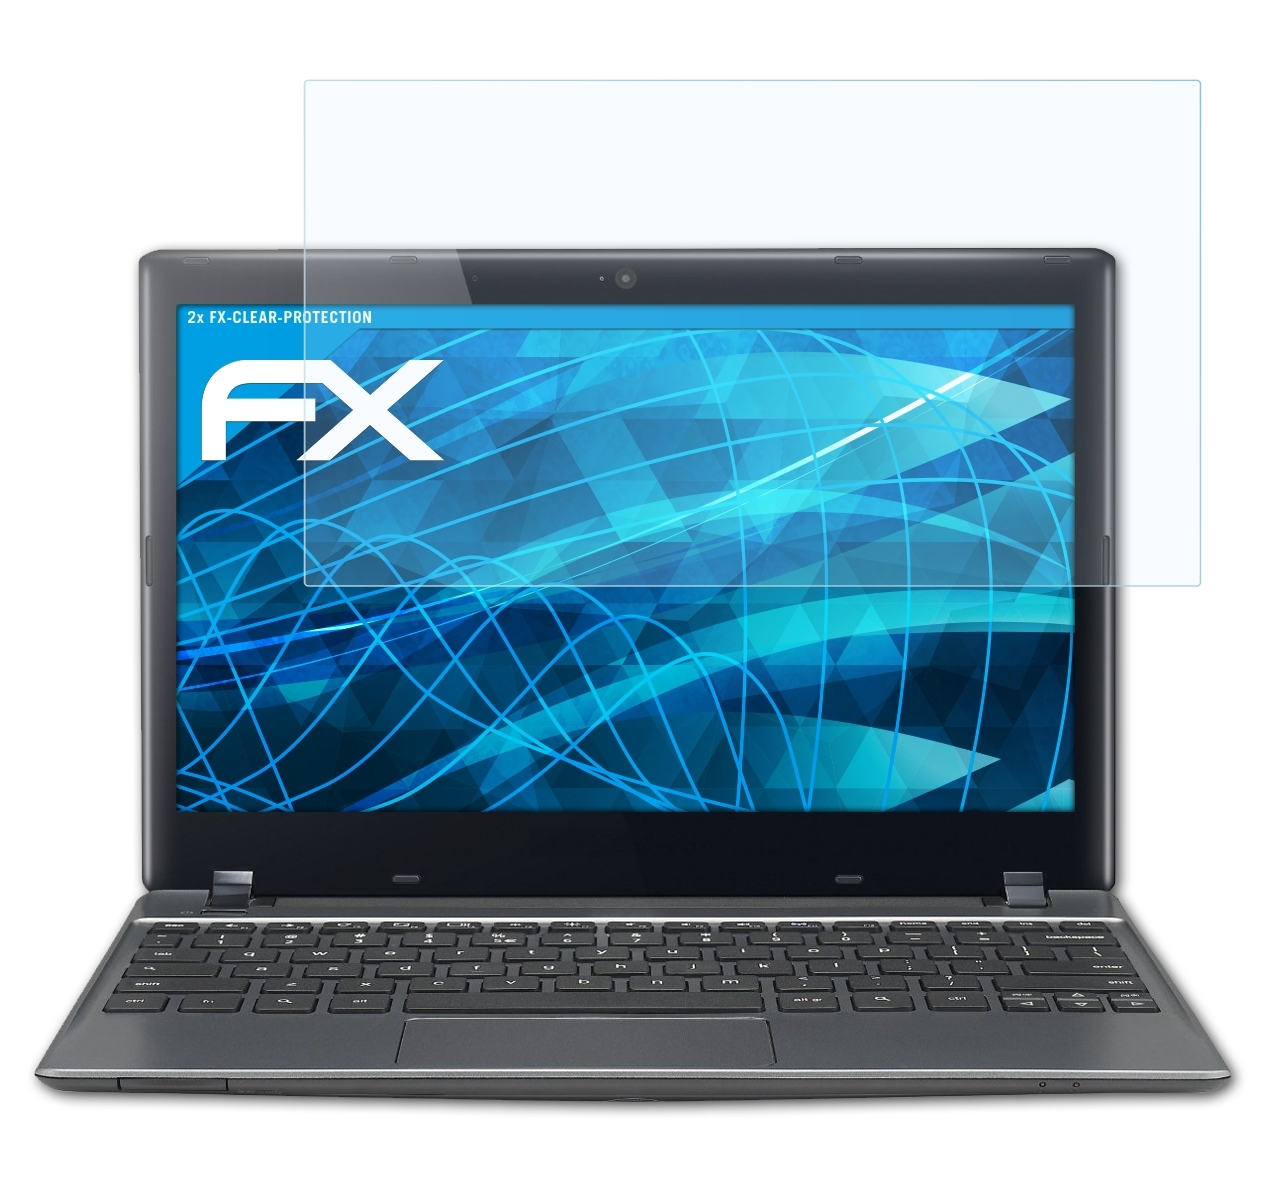 ATFOLIX Inch) Chromebook C7 2x (C710, Displayschutz(für (Acer)) FX-Clear Google 11.6